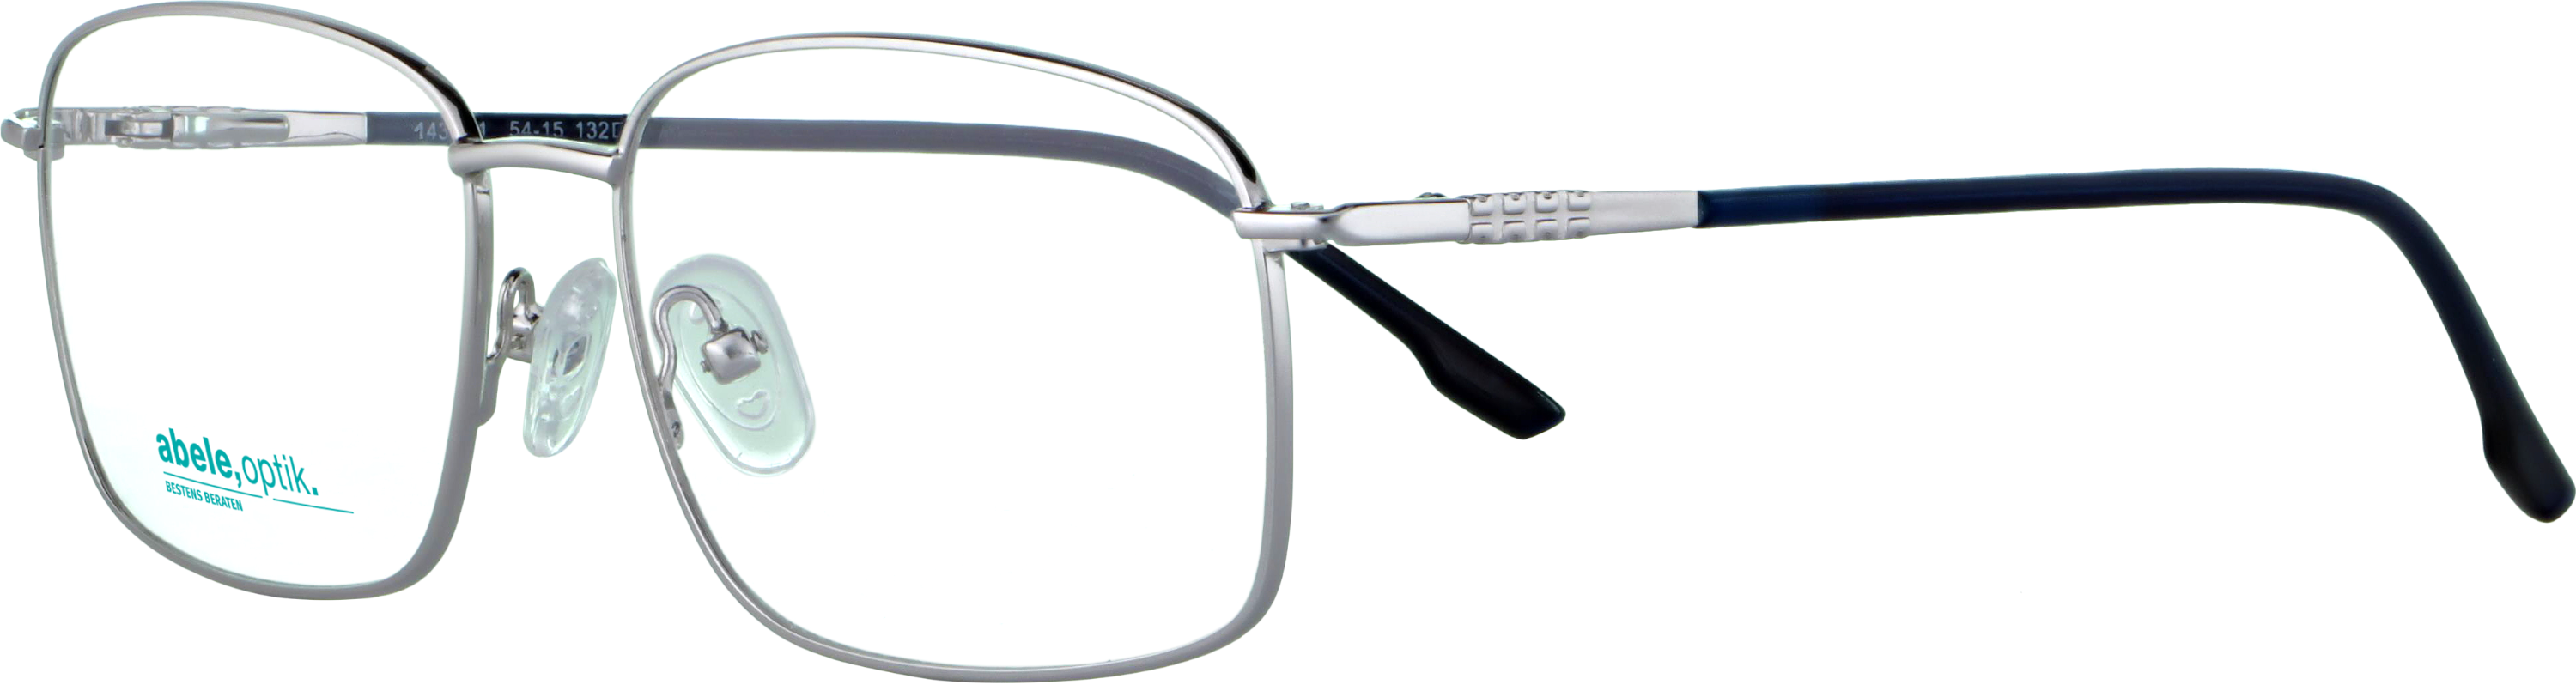 Das Bild zeigt die Korrektionsbrille 143931 von Abele Optik in silber/blau.